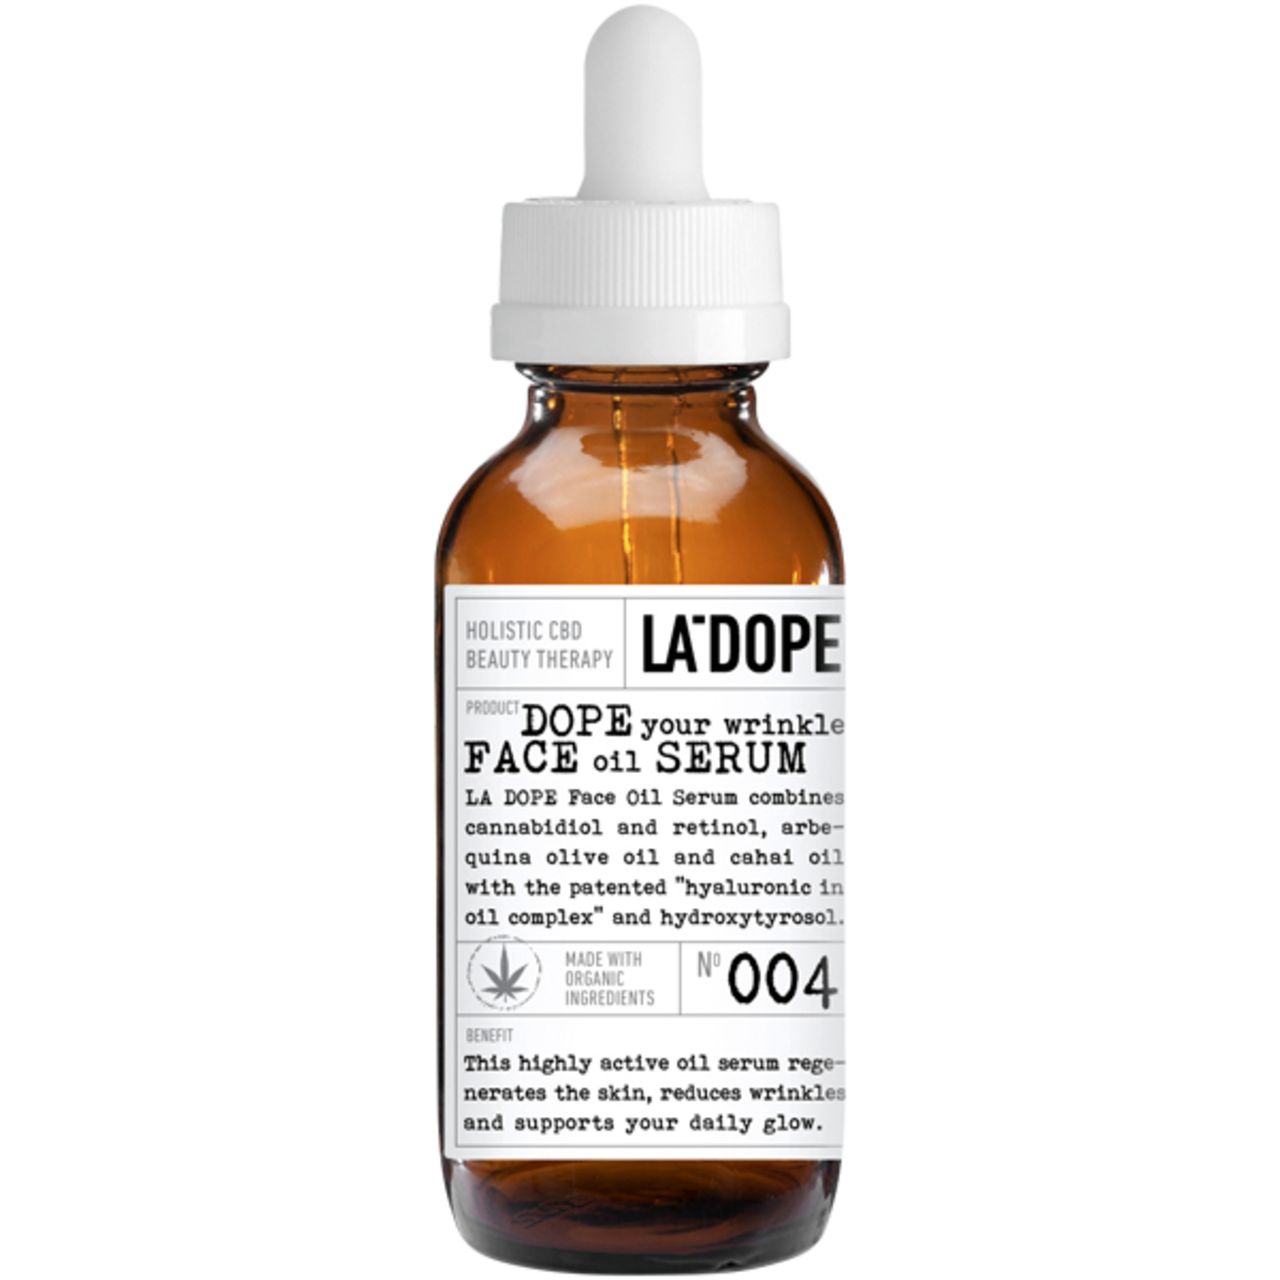 La Dope, CBD Face Oil Serum 004